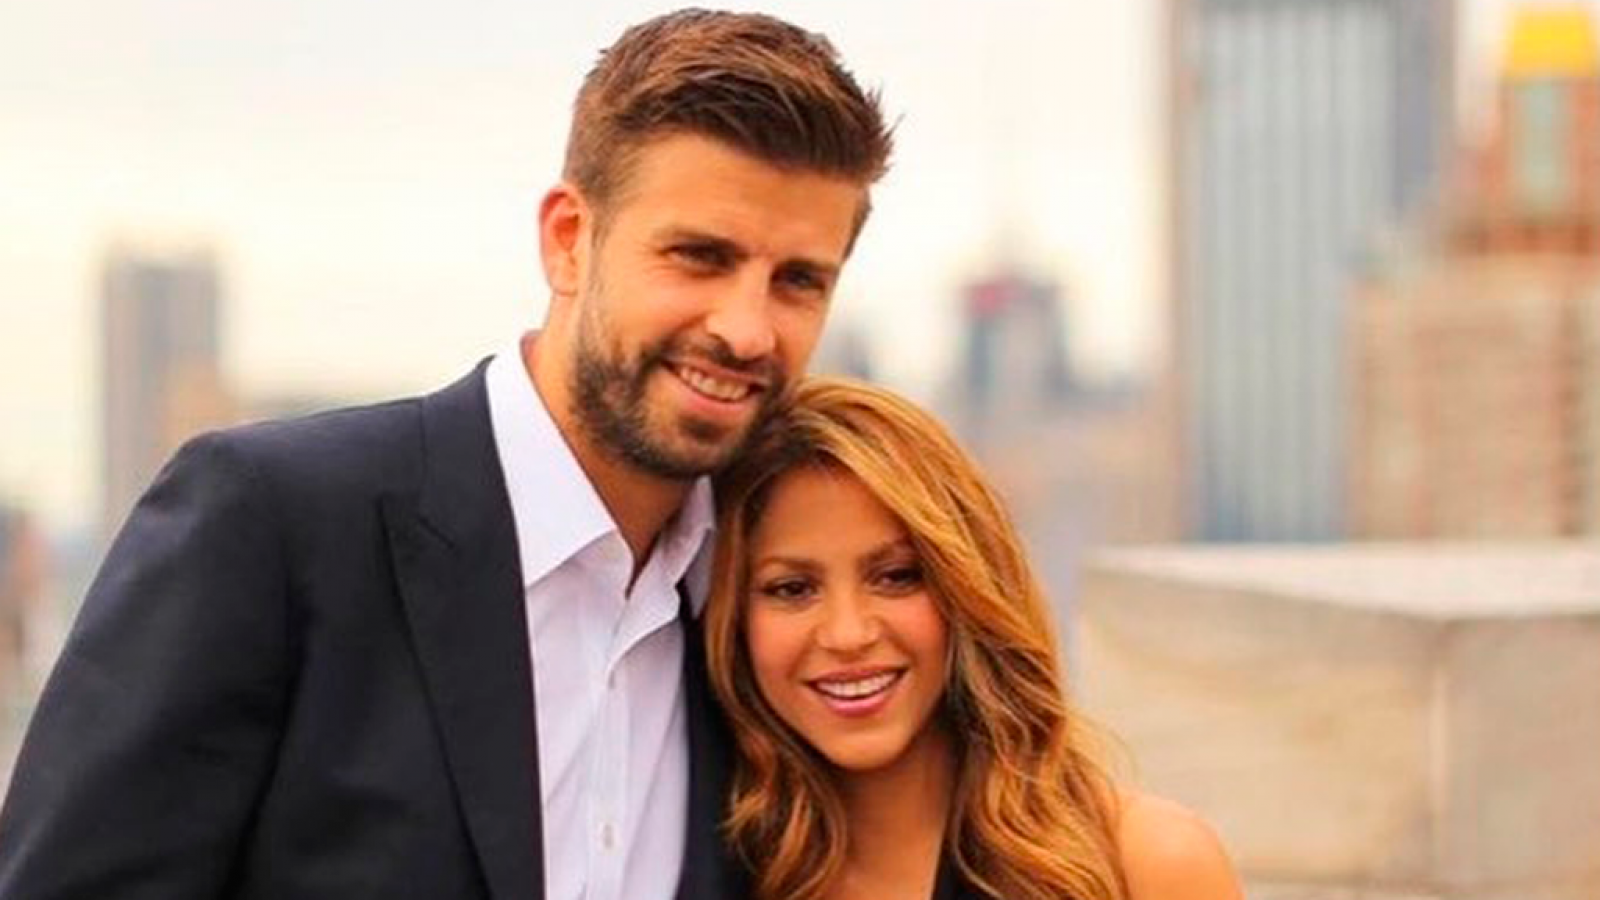 Corazón - Shakira sobre su relación con Piqué: "No somos una pareja tradicional"